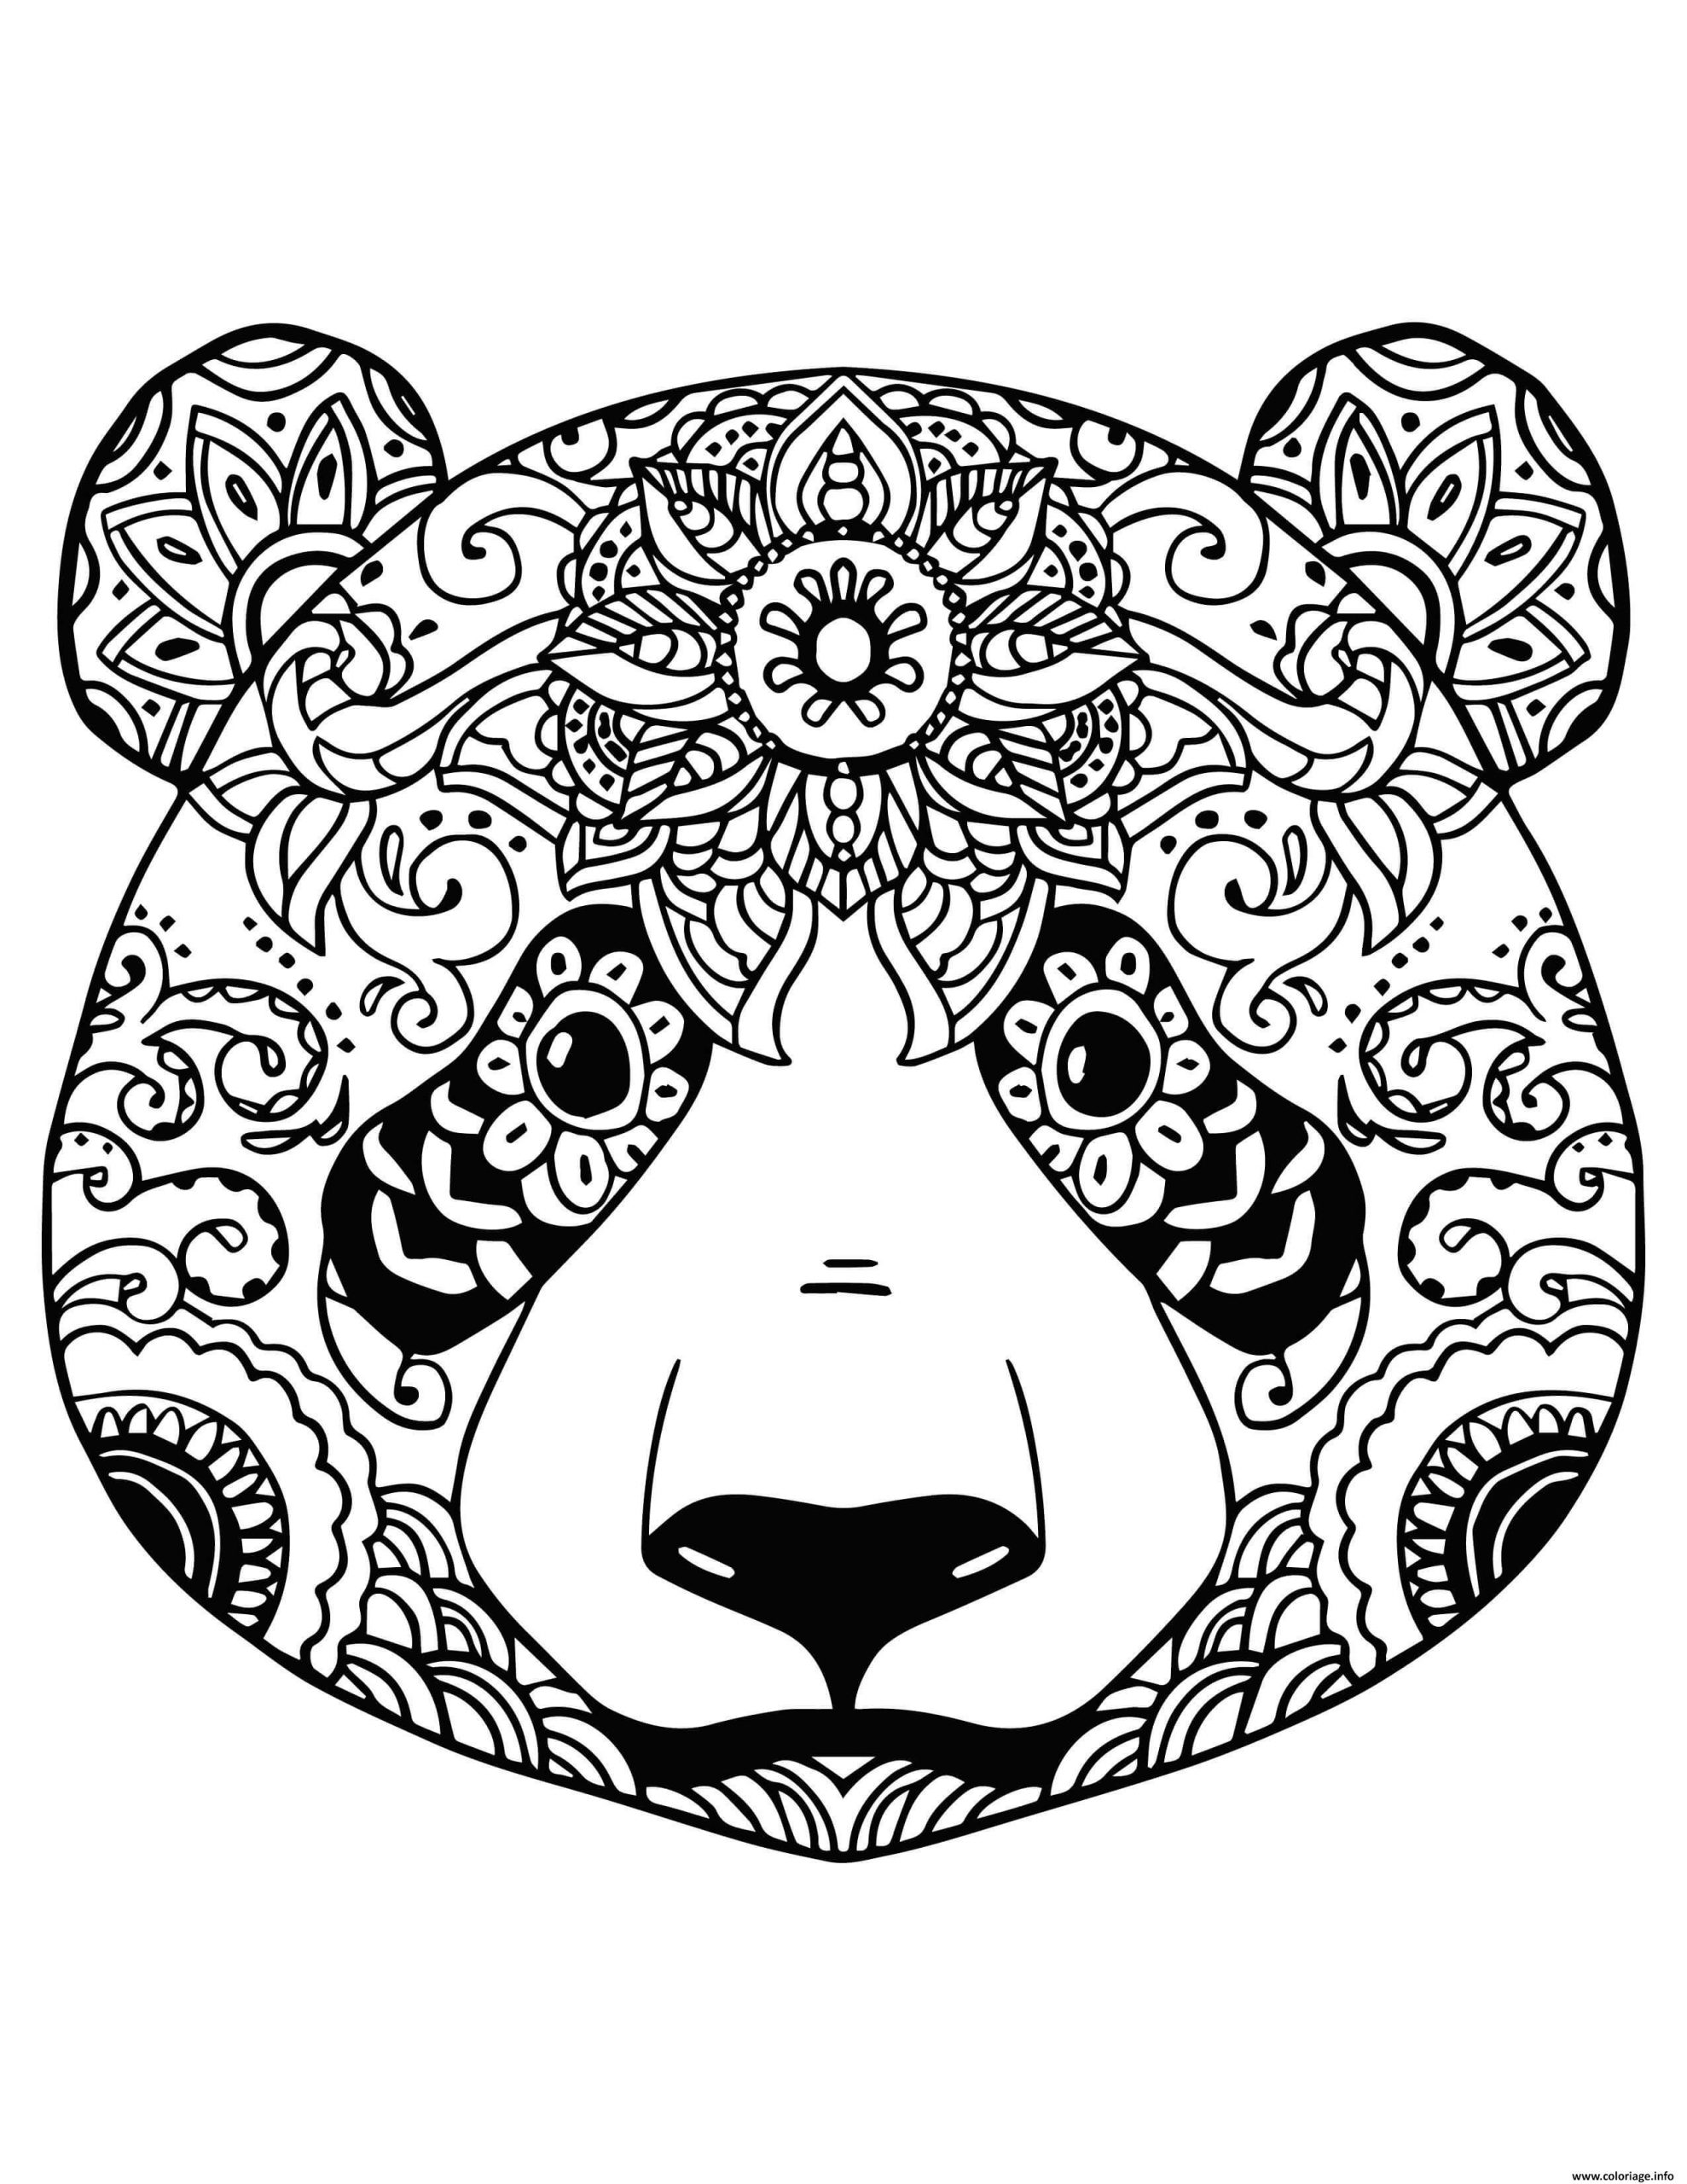 Coloriage Tete De Panda Pour Adulte Relaxation Mandala Dessin Panda À à Dessin De Mandala À Imprimer 